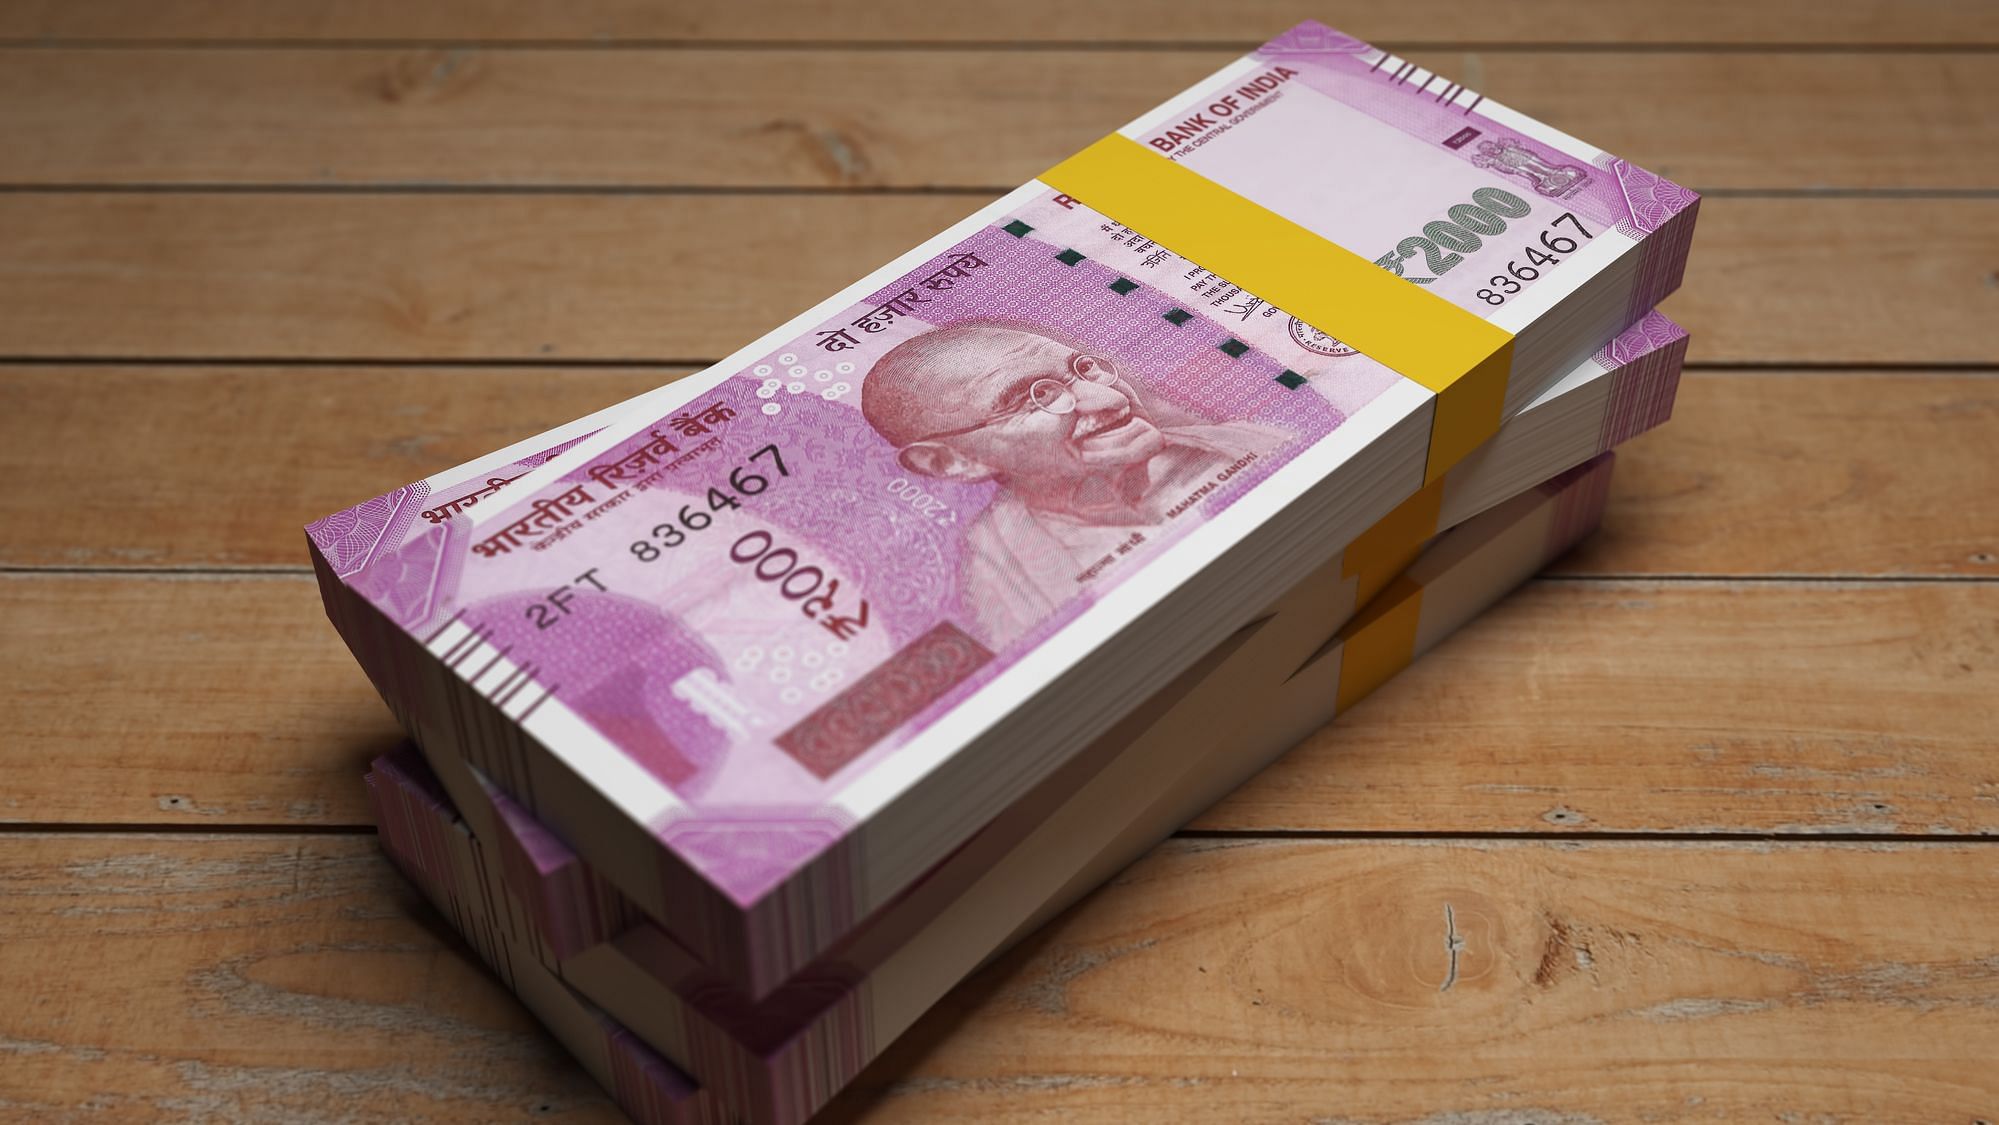 स्विटजरलैंड के बैंकों में जमा कुल विदेशी फंड में भारत का मात्र 0.07 प्रतिशत धन ही जमा है